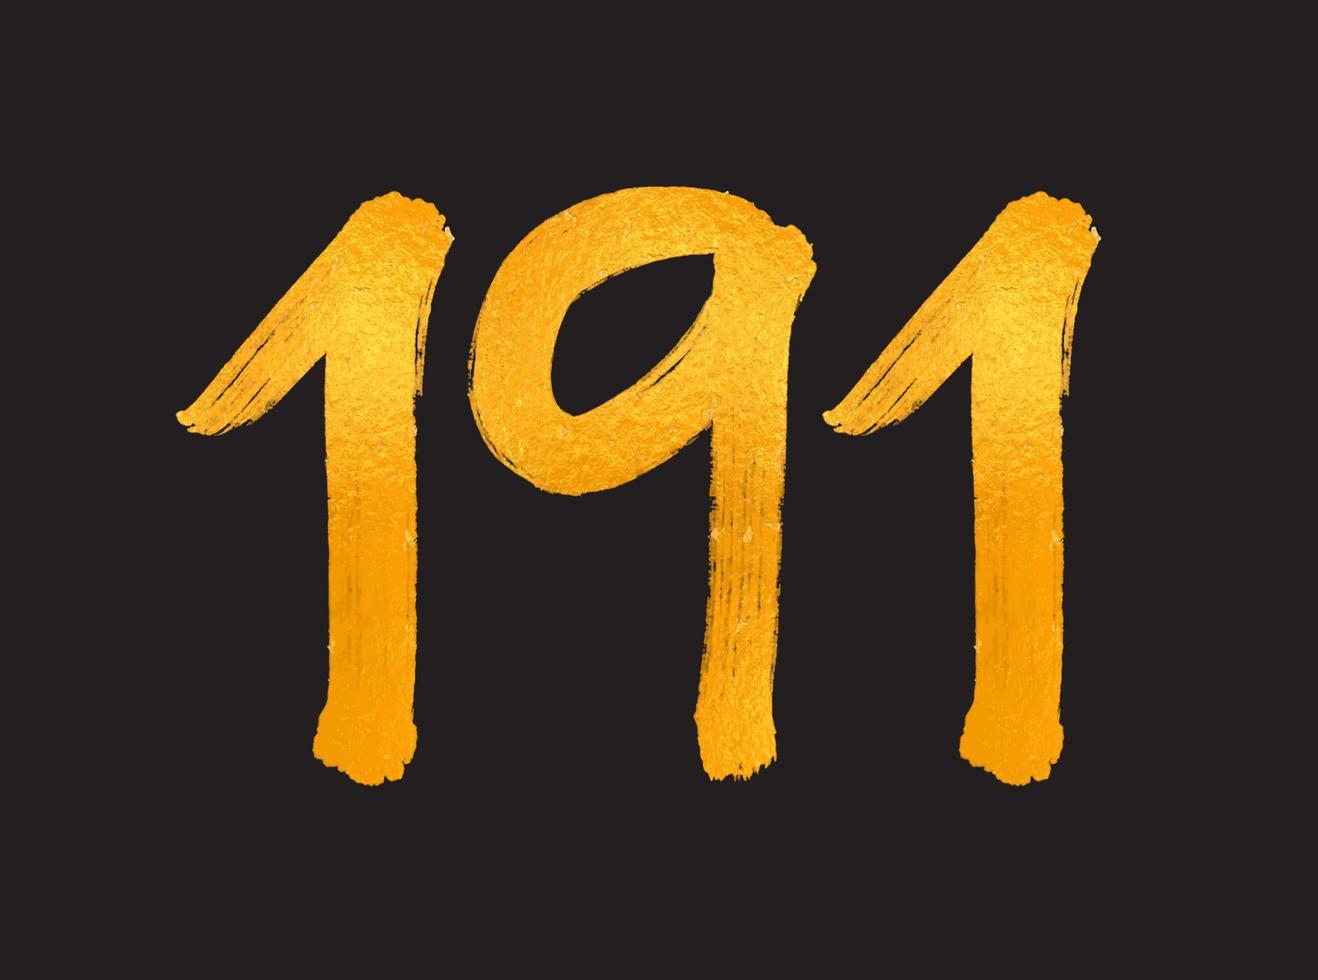 191 siffra logotyp vektor illustration, 191 år årsdag firande vektor mall, 191:e födelsedag, guld text tal borsta teckning hand dragen skiss, siffra logotyp design för skriva ut, t skjorta